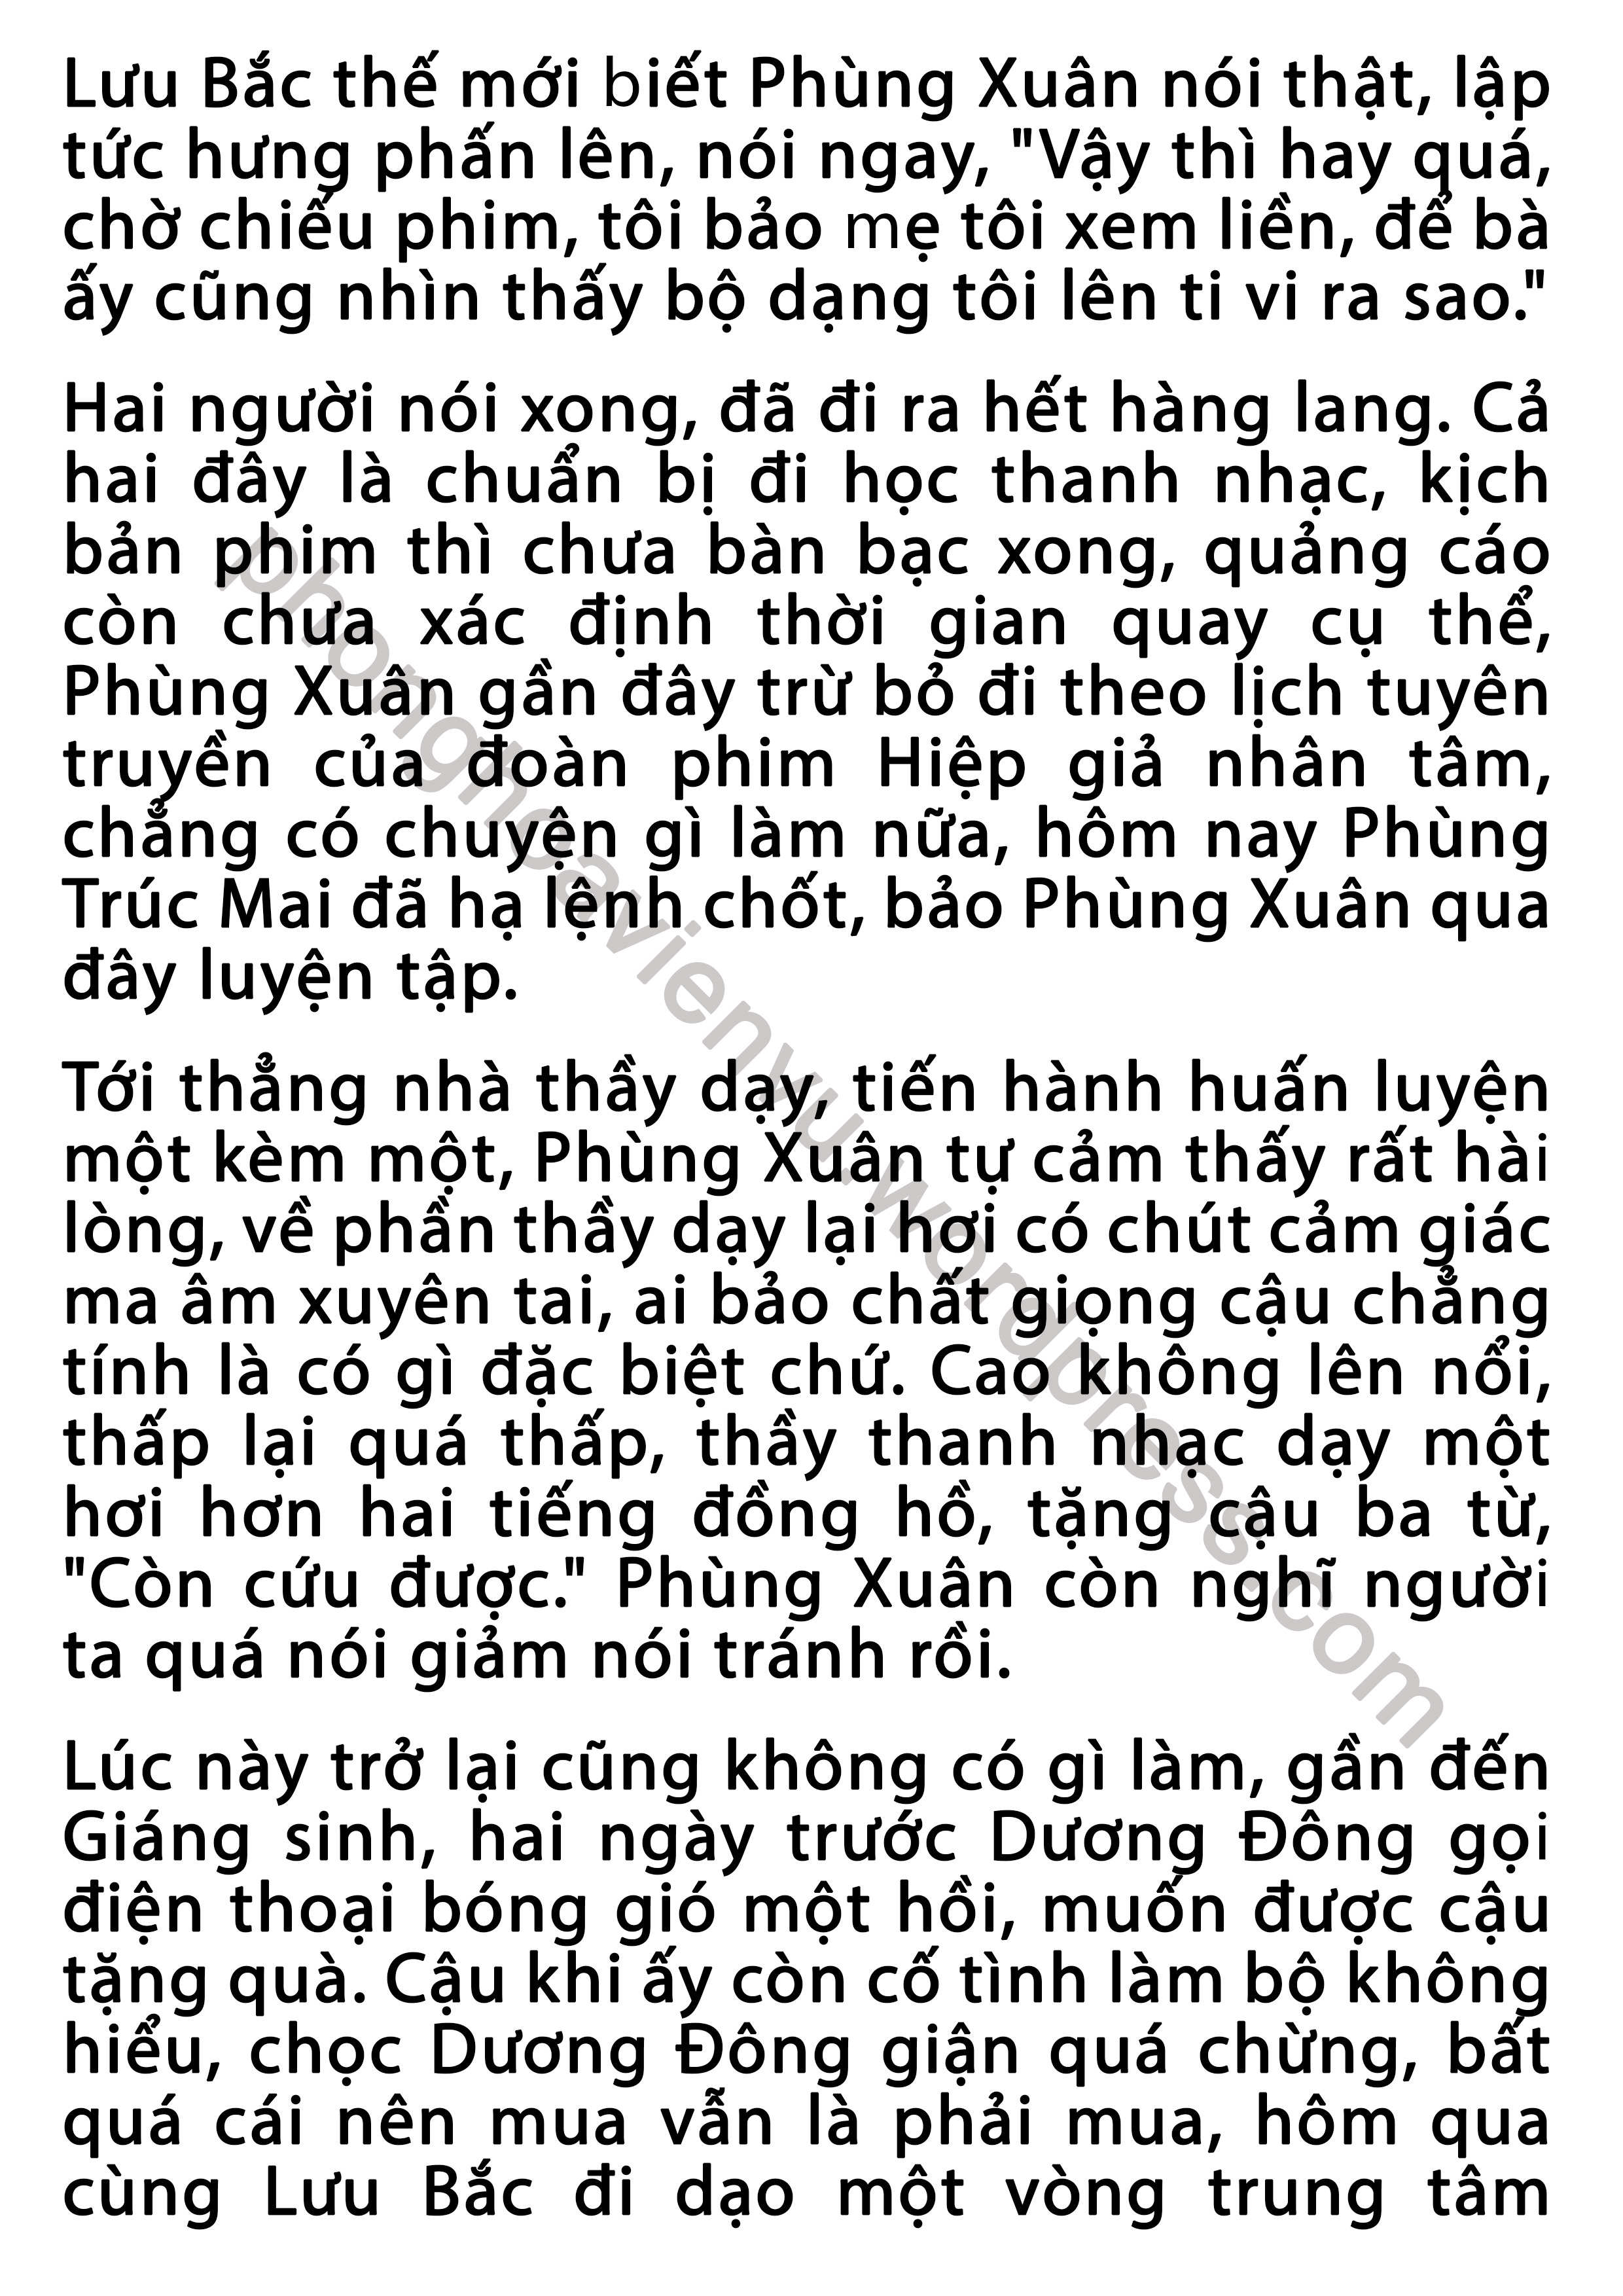 phung-xuan-43-pic3